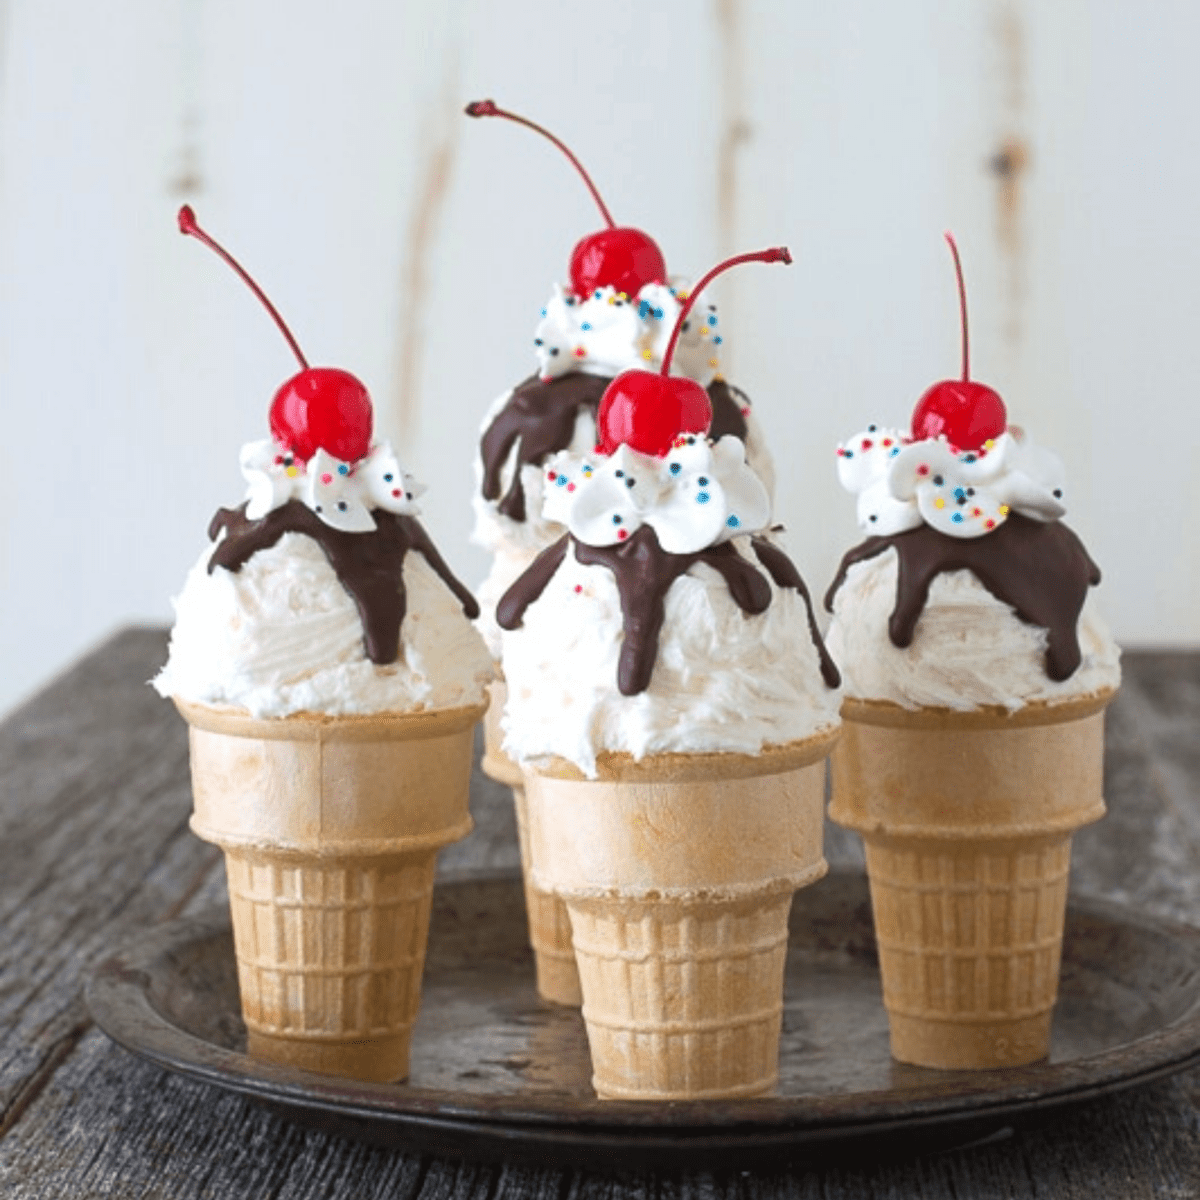 Ice Cream Scoop Cupcakes 